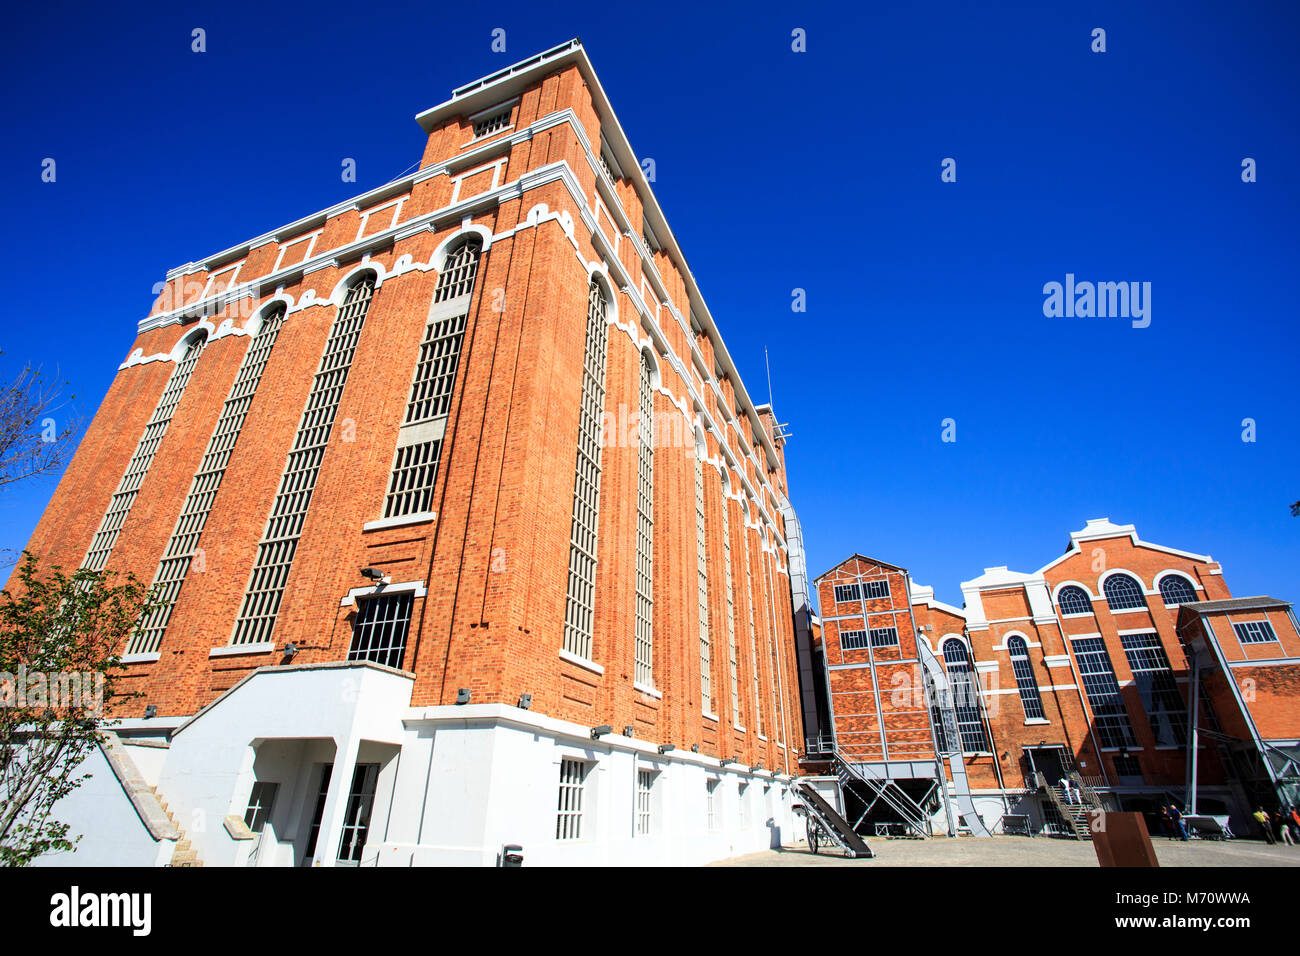 Le Musée de l'électricité est un bel exemple d'architecture industrielle portugaise de fer recouverte de briques en stlyles artistique de l'Art Nouveau à Banque D'Images